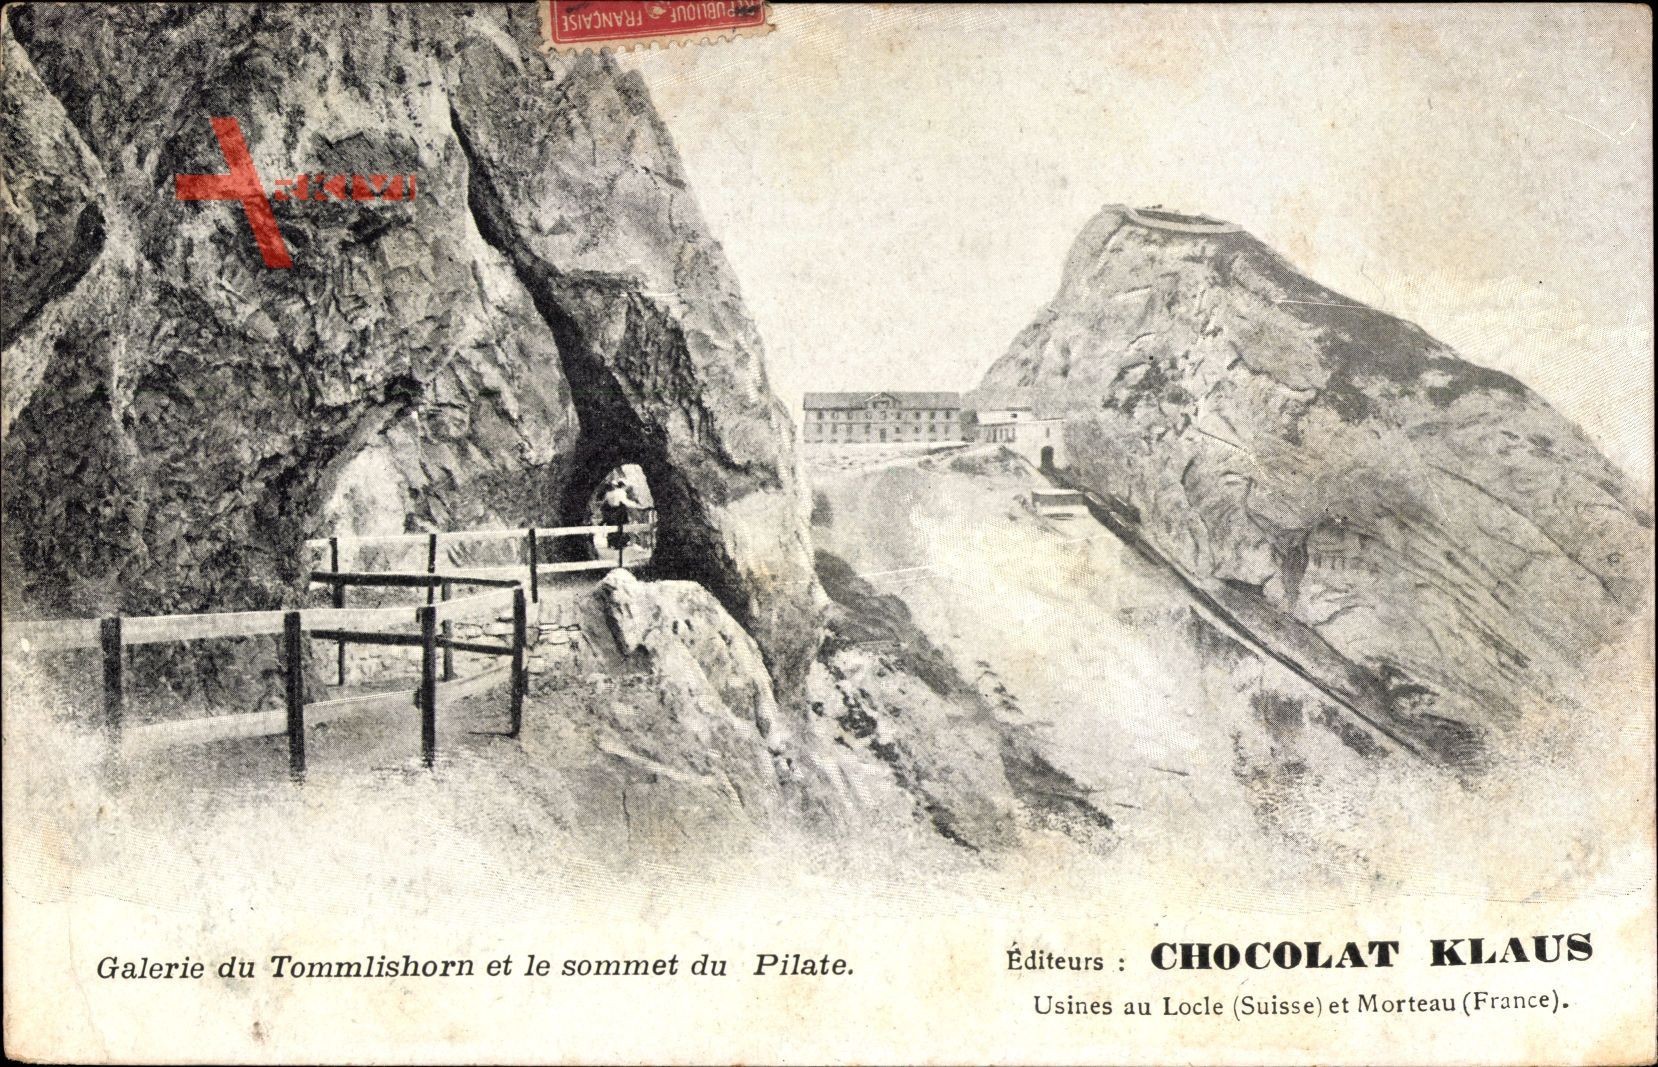 Galerie du Tommlishorn et le sommet du Pilate, Berggipfel, Chocolat Klaus